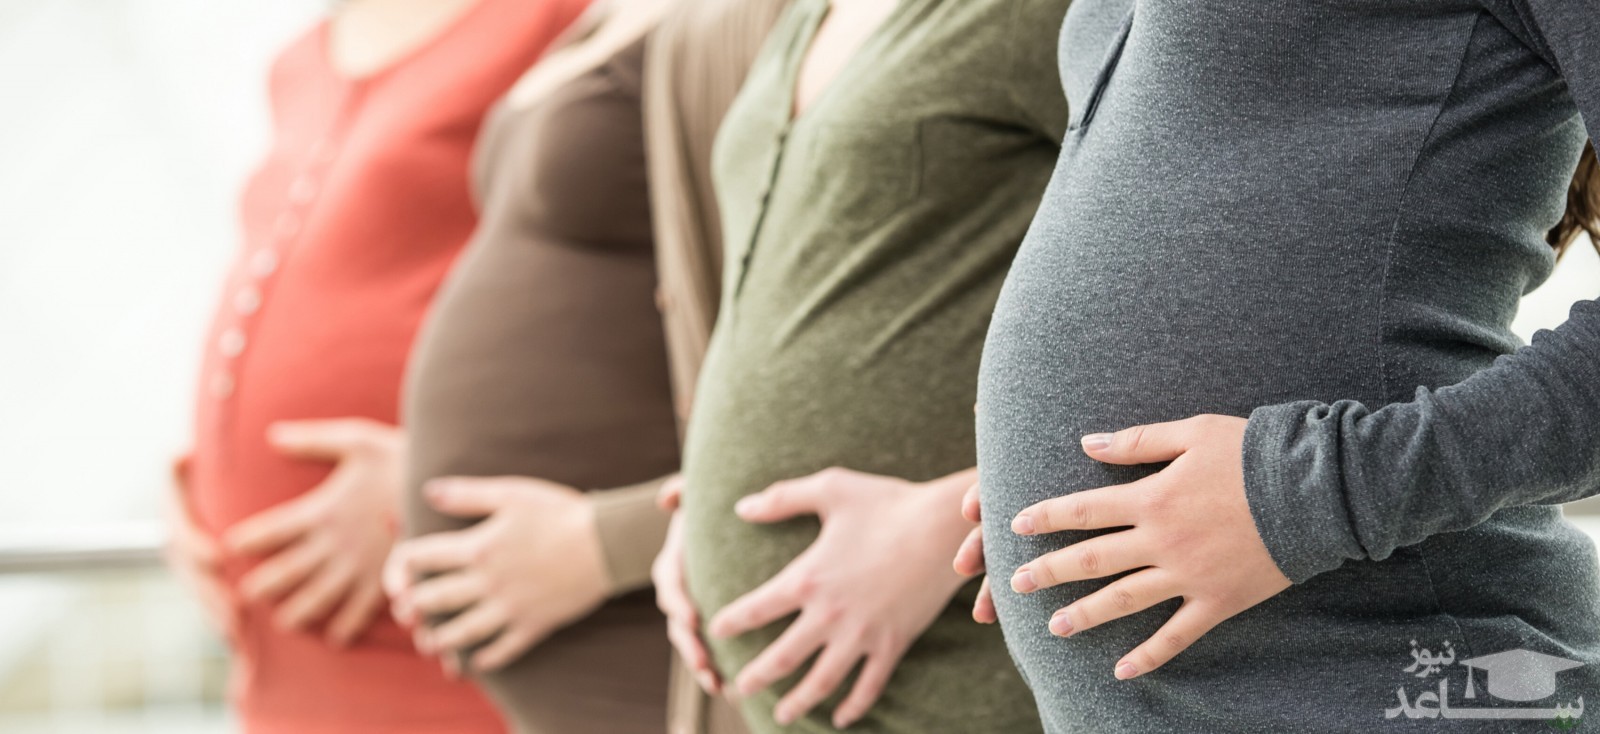 فواید و عوارض ماساژ در دوران بارداری